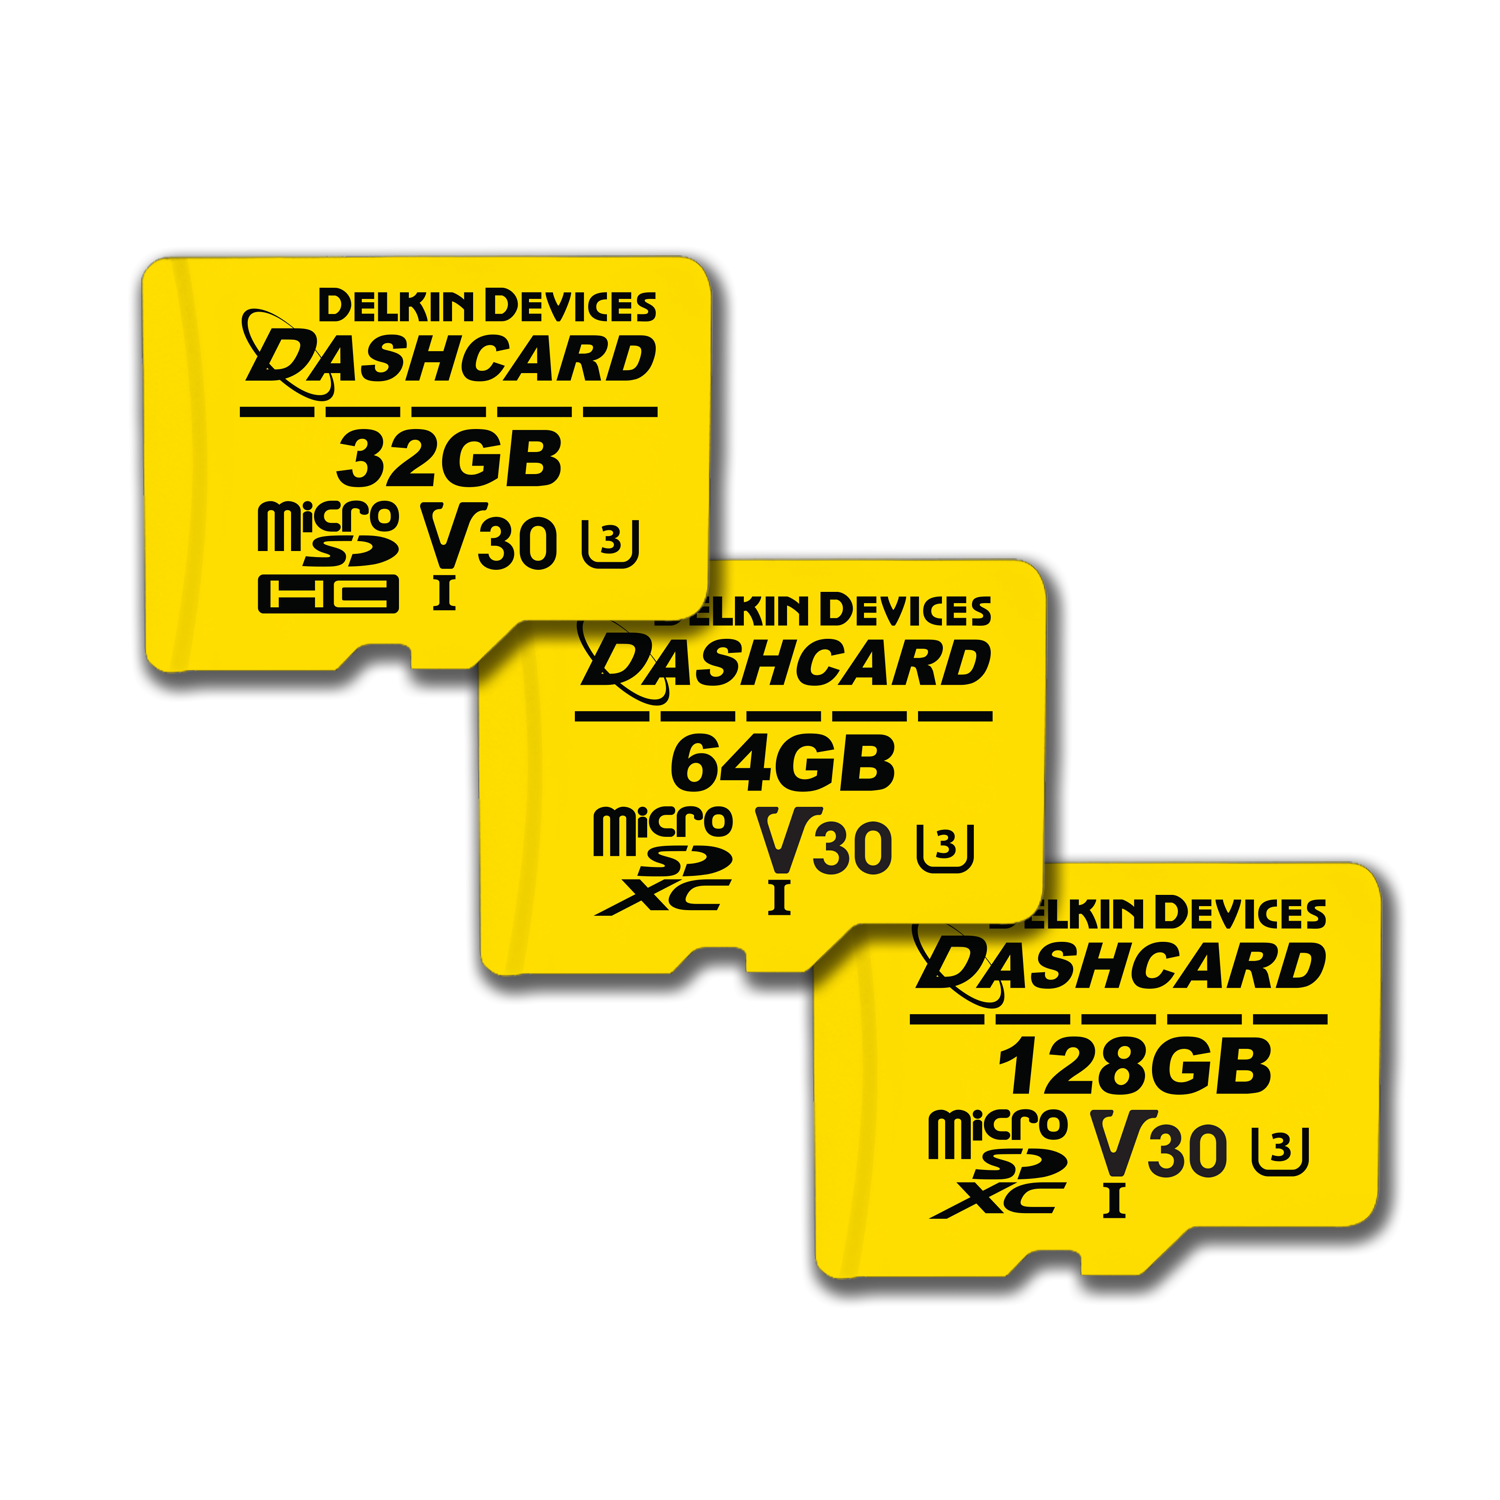 Dashcard- Delkin Devices